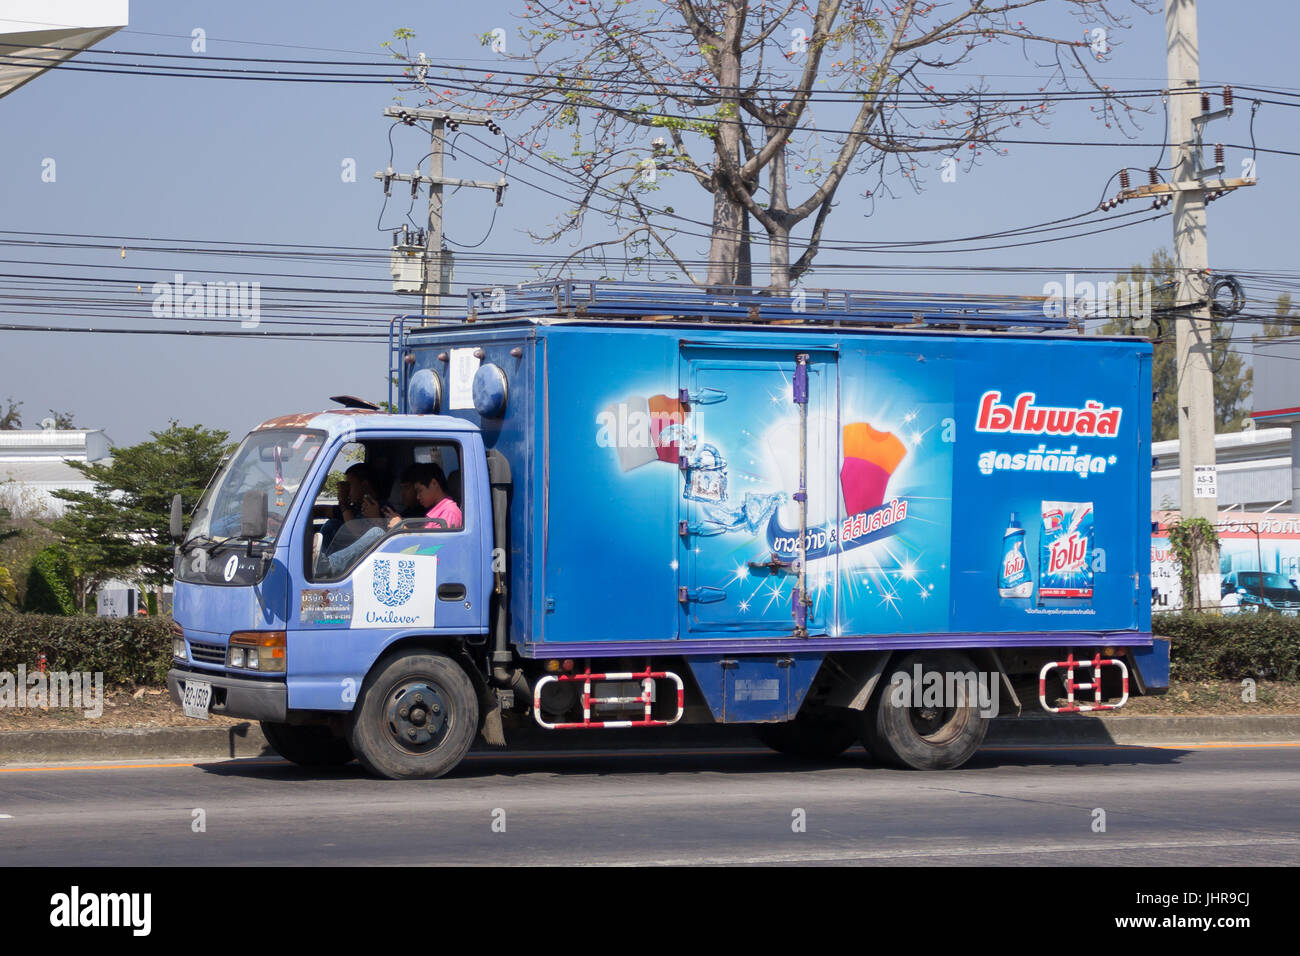 CHIANG MAI, THAÏLANDE - 20 février 2017 : camion conteneur d'Unilever. Photo road no.121 à environ 8 km du centre-ville de Chiang Mai, Thaïlande. Banque D'Images